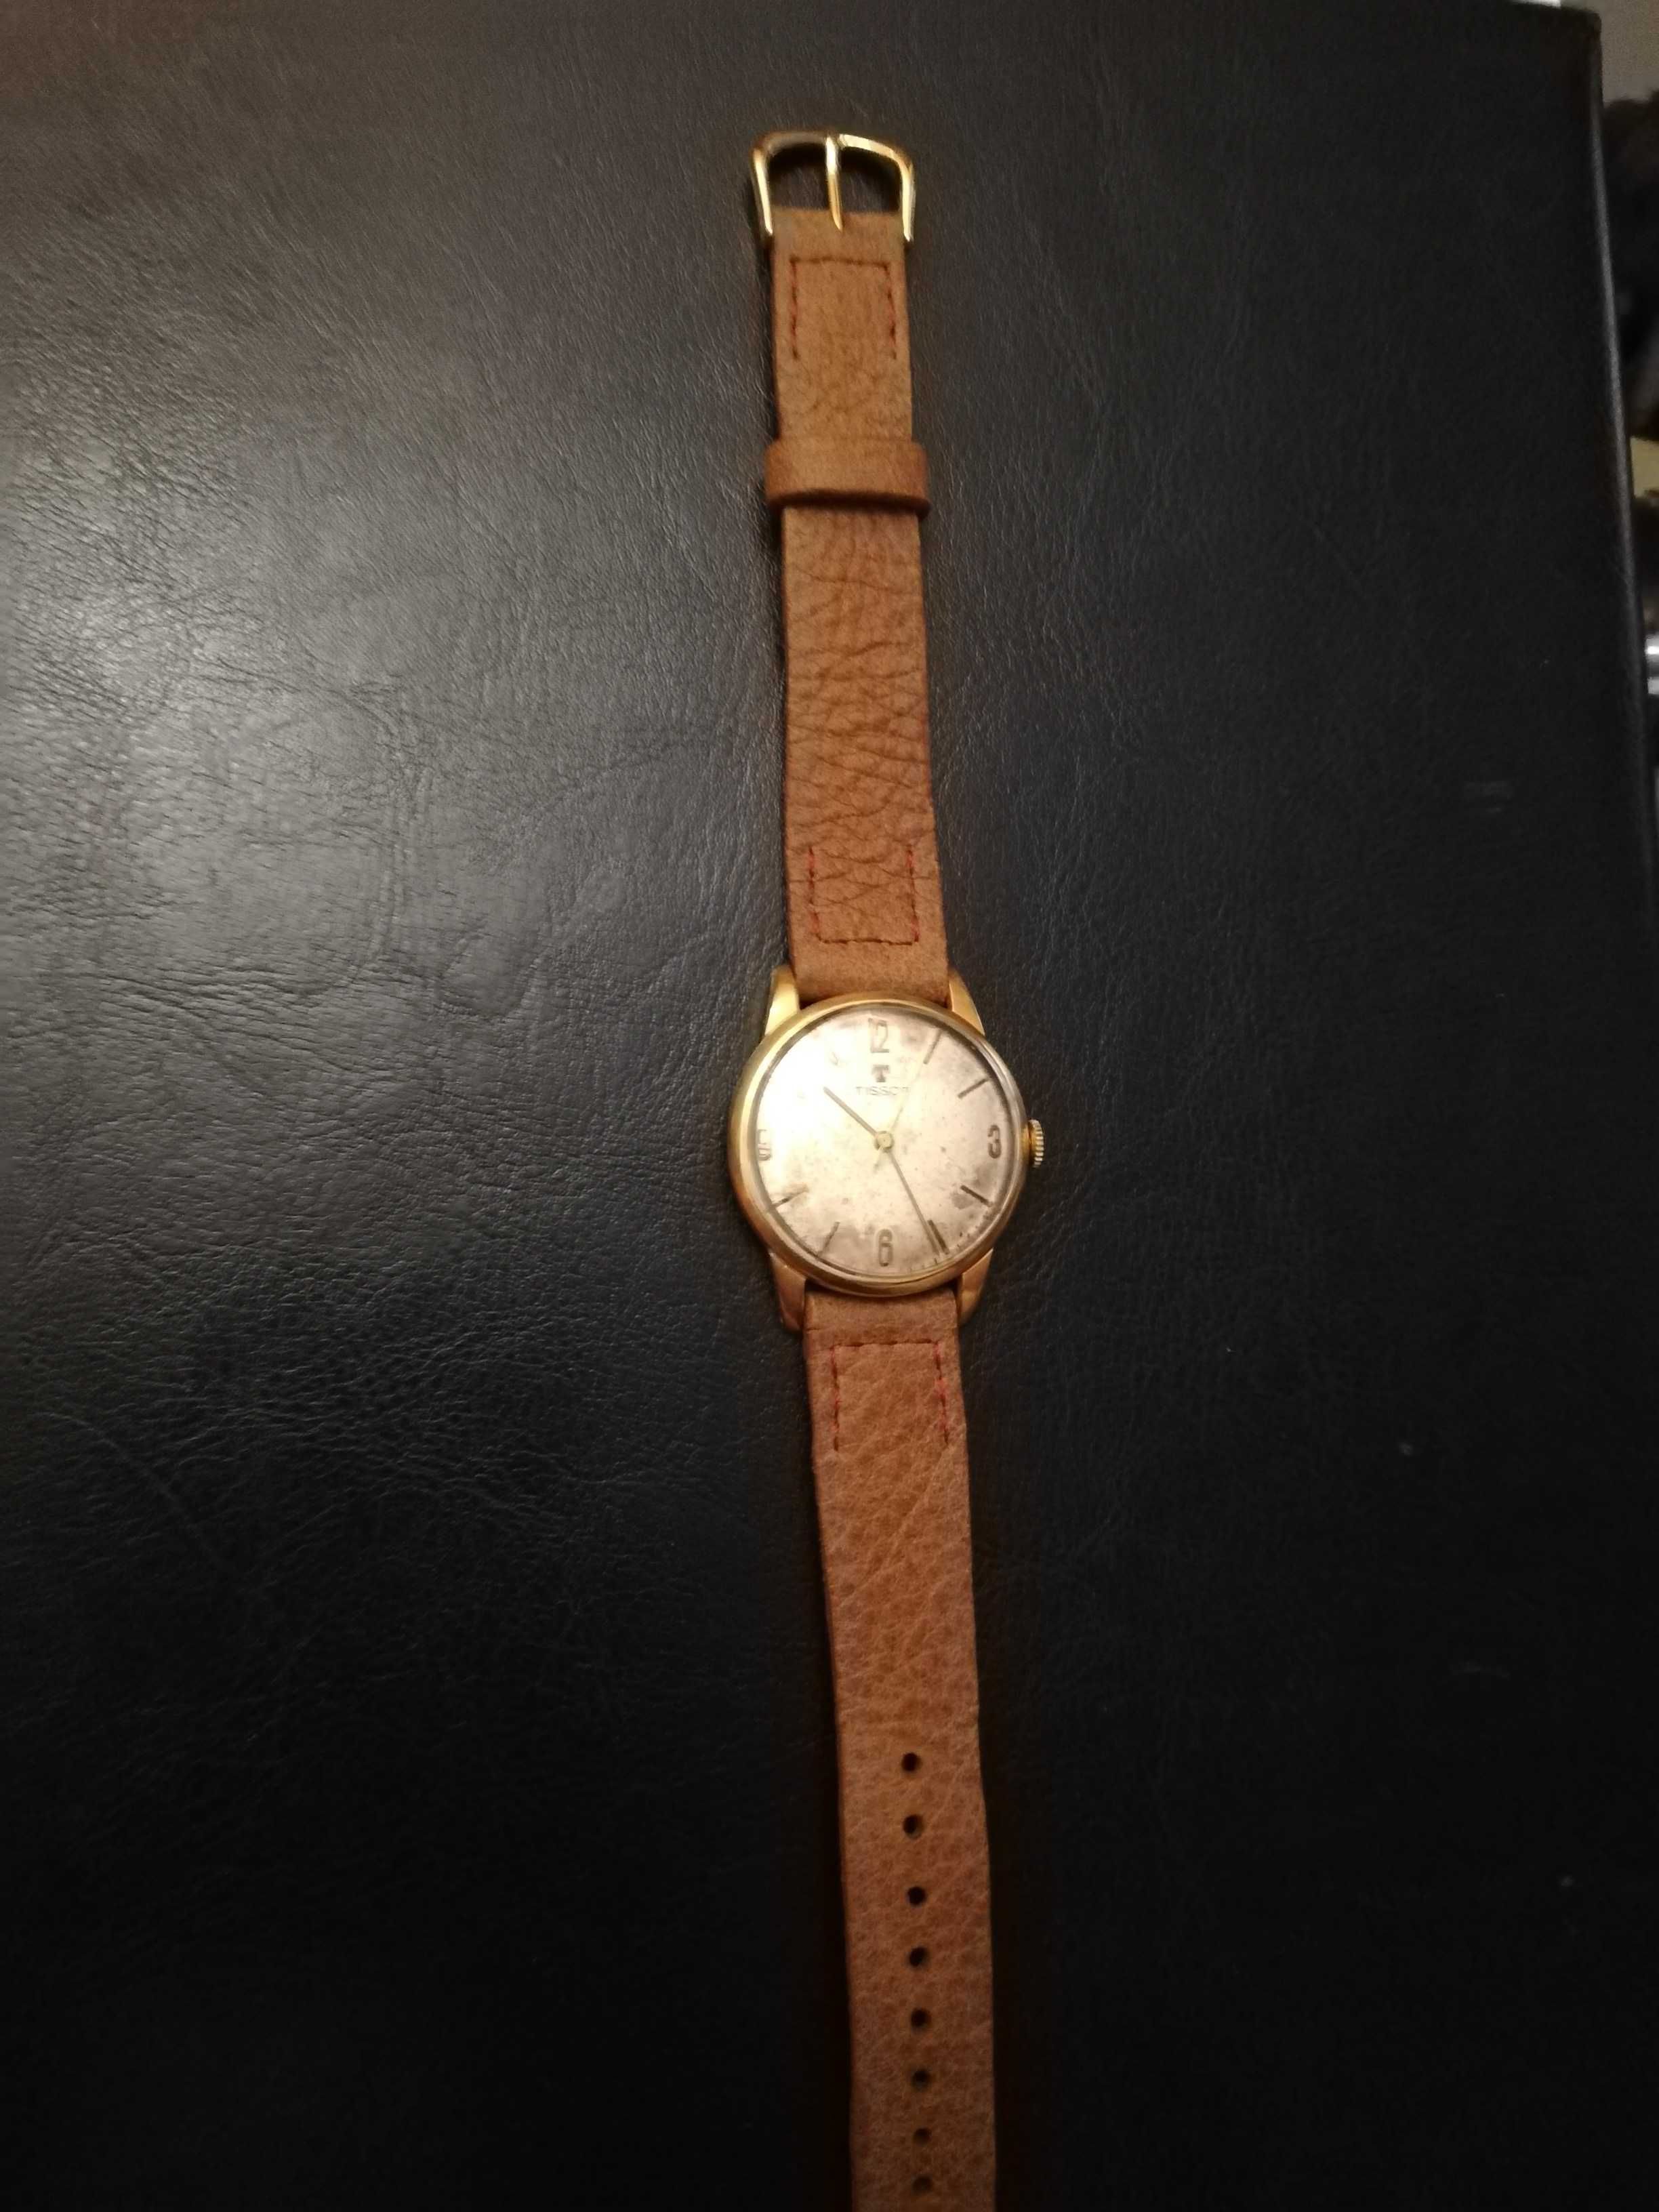 Sprzedam pozłacany męski zegarek Tissot z 1959r, pasek skóra hand made